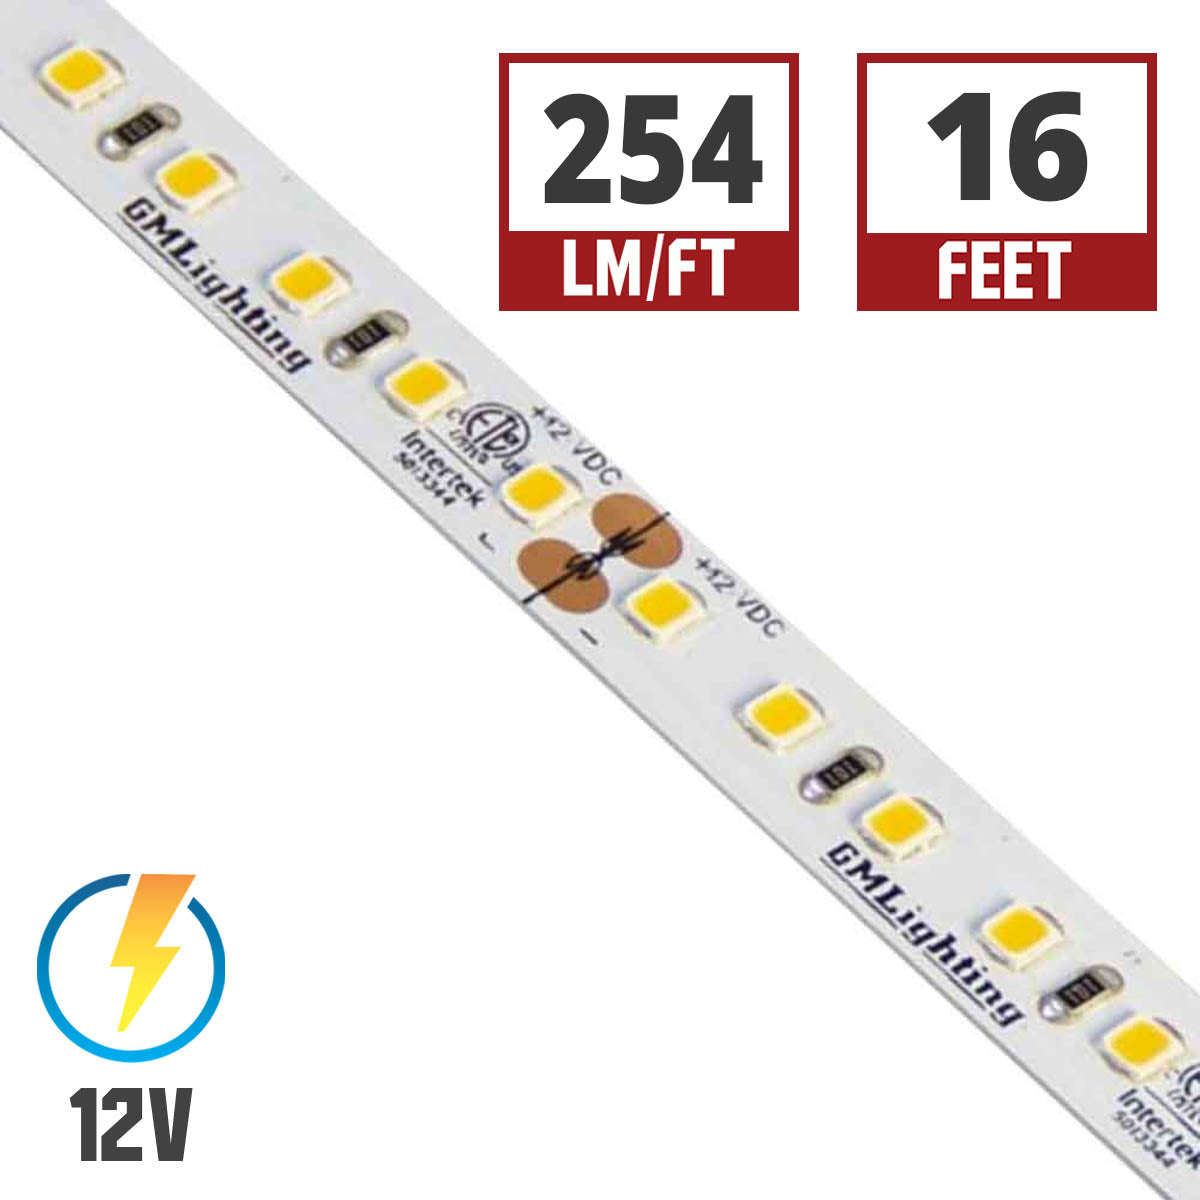 LTR-P Pro LED Strip Light, 3.0W / ft, 240 Lumens per Ft, 12V